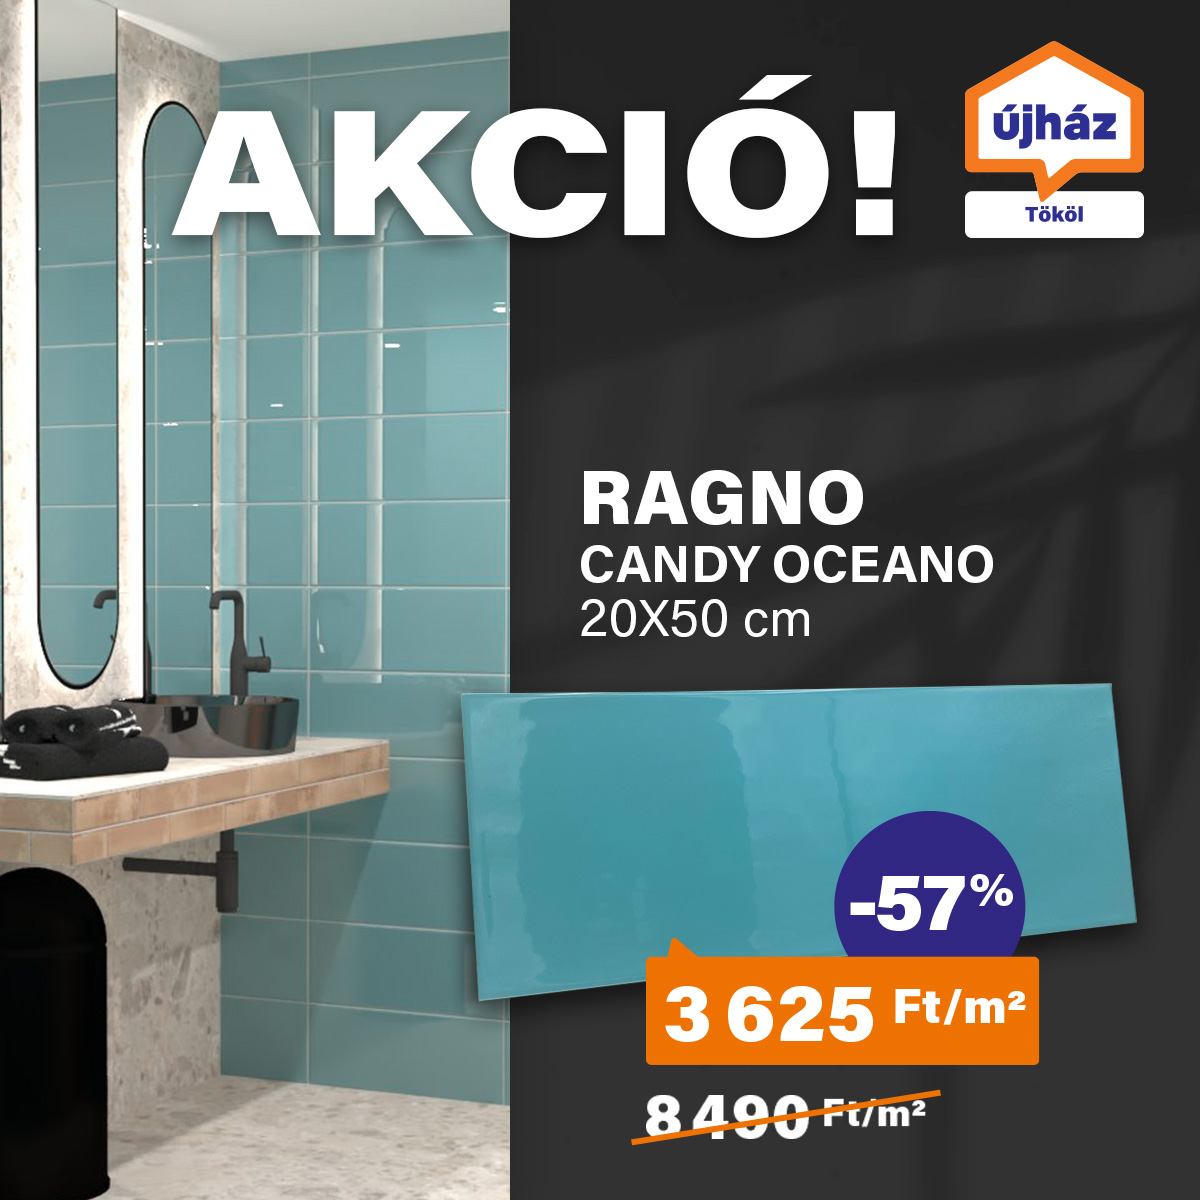 Csak a készlet erejéig: Ragno Candy oceano 20x50 cm!